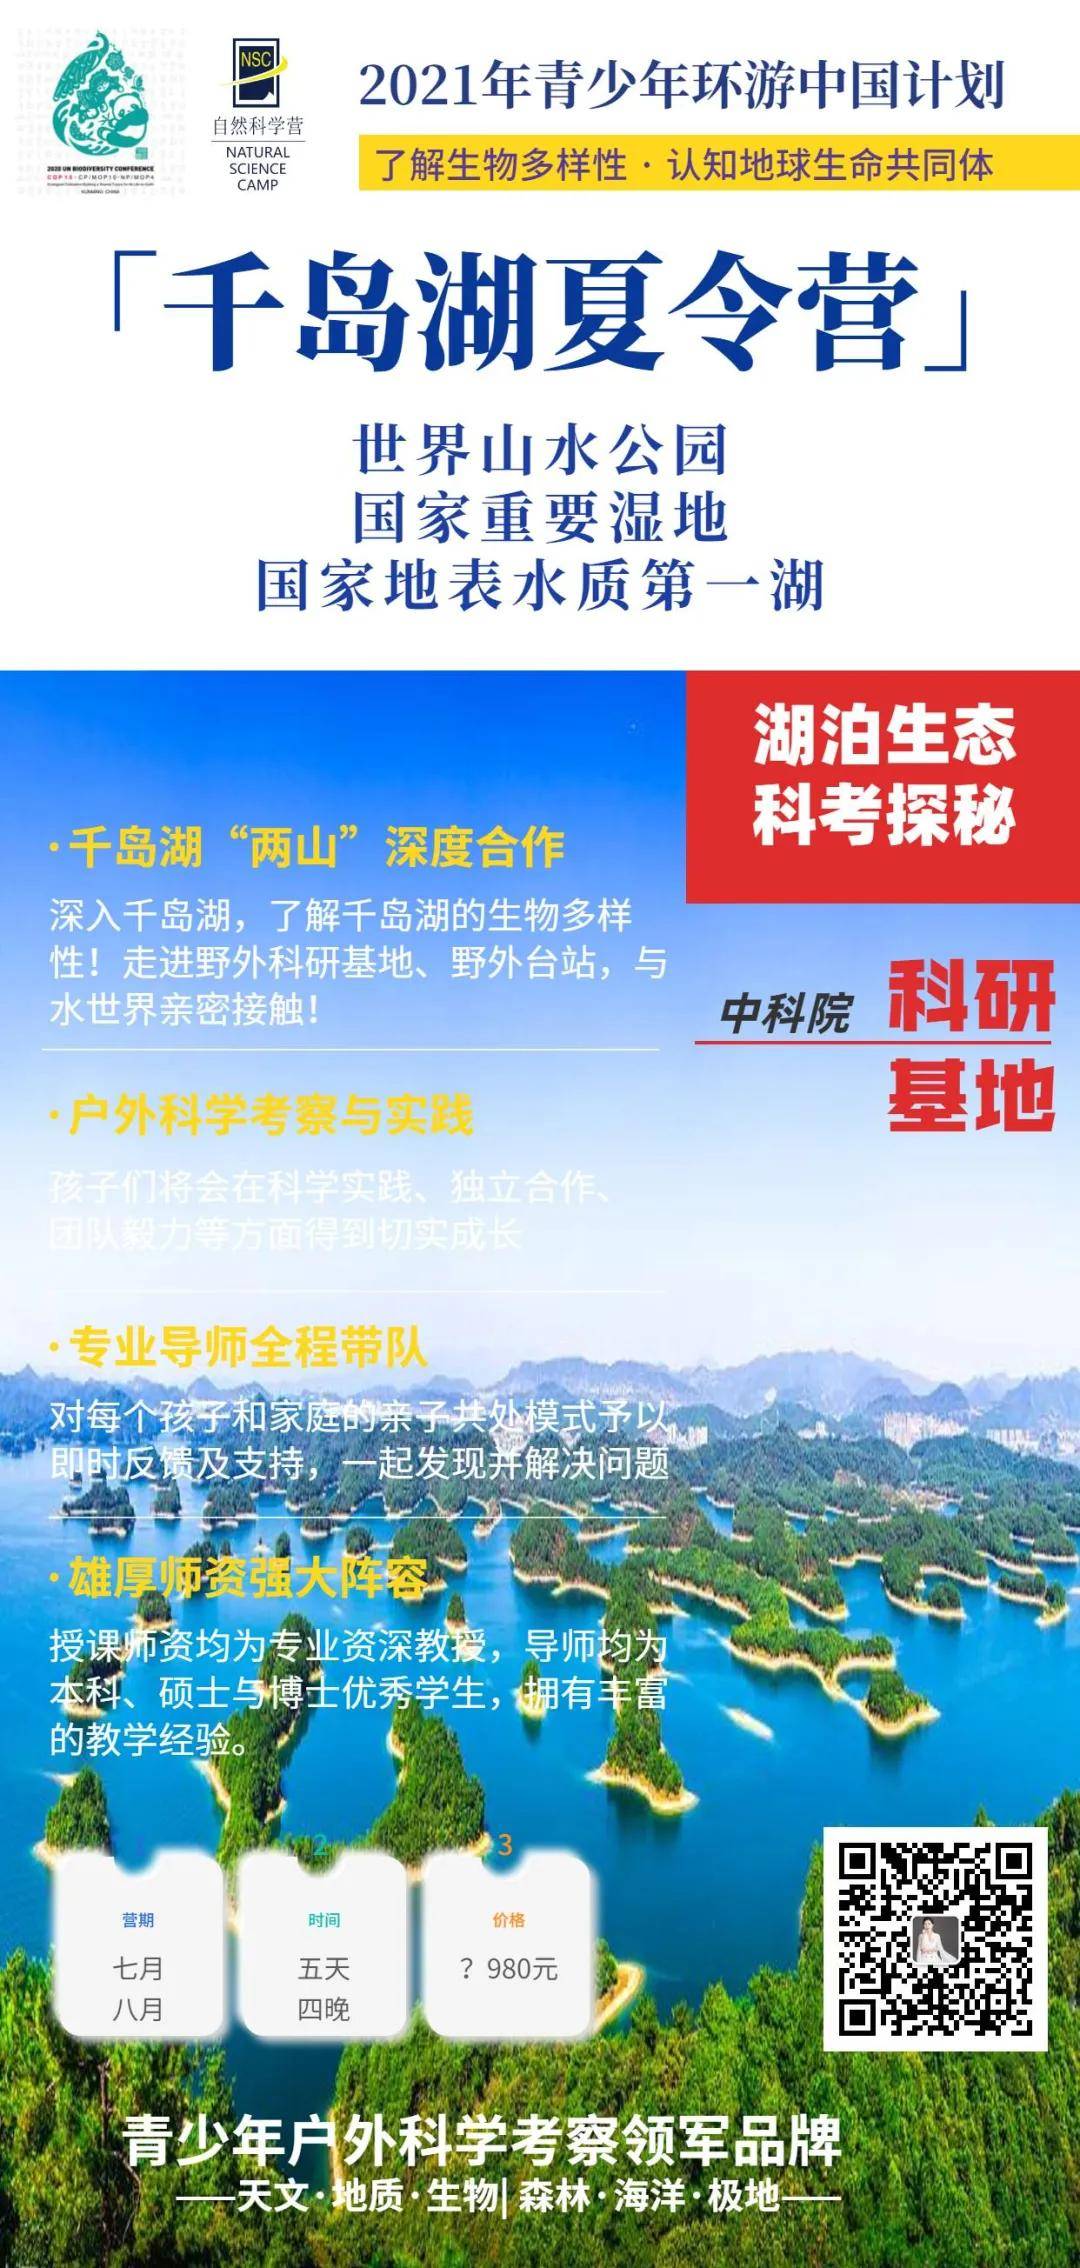 中国东部 | 千岛湖生态夏令营| 来一场湖泊科考生态探秘之旅